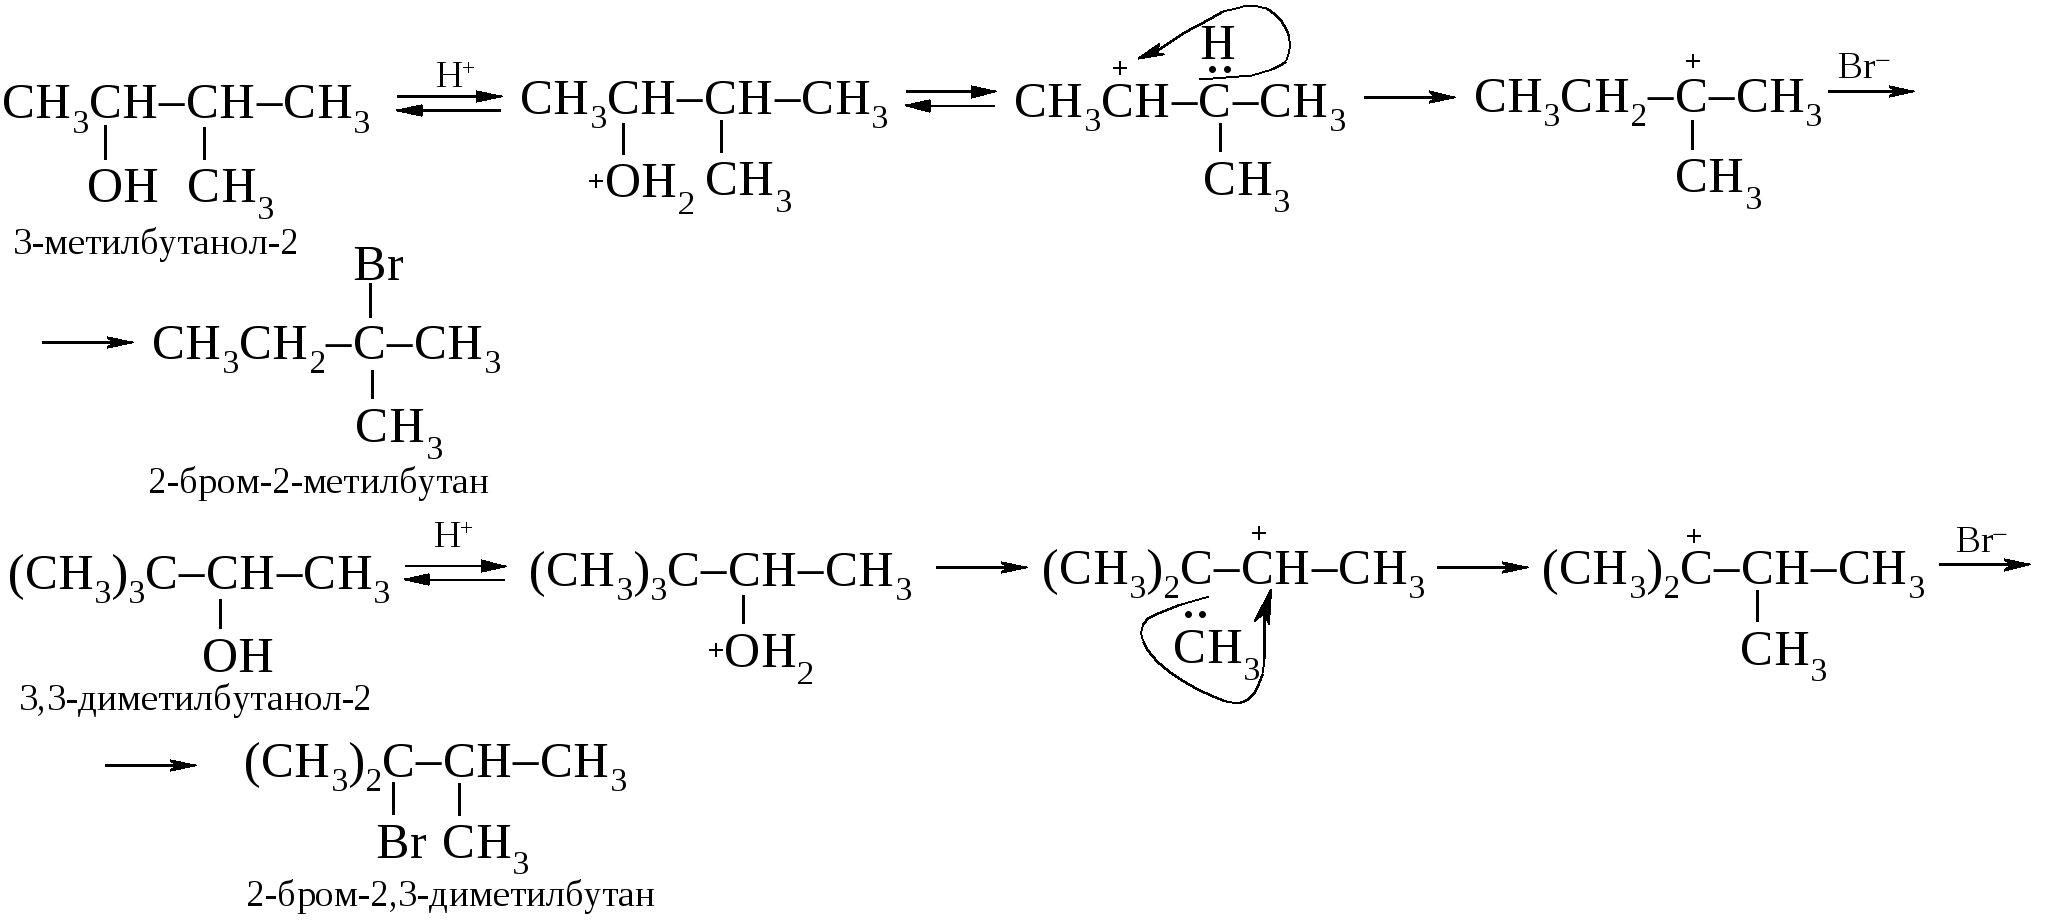 3 метил бутан. 1 1 Диметокси 2 метилбутана. 2 Метилбутанол 2. 3 Метилбутанол 1. 3 Метилбутанол 2.